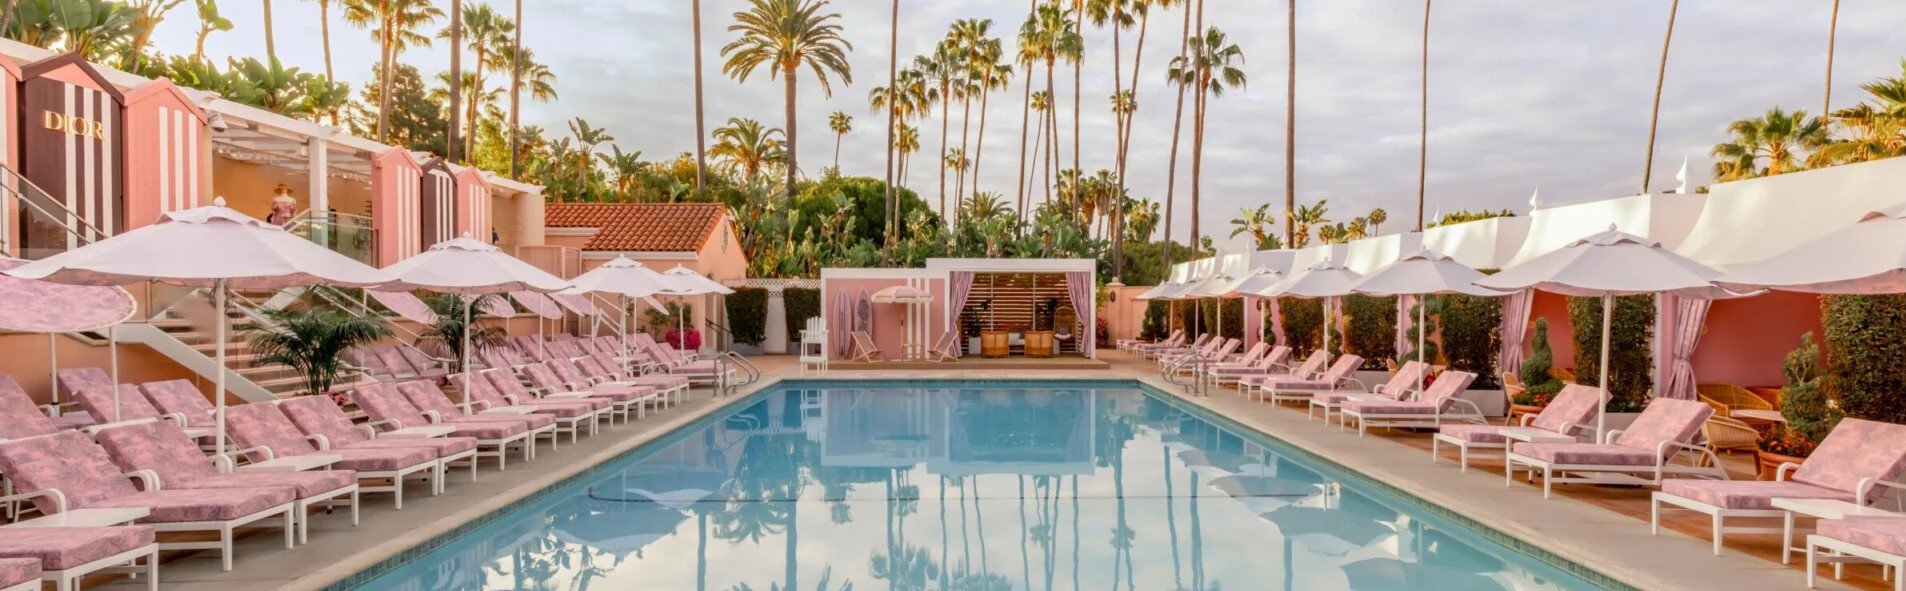 Los Angeles HOTEL|ロサンゼルス ホテル